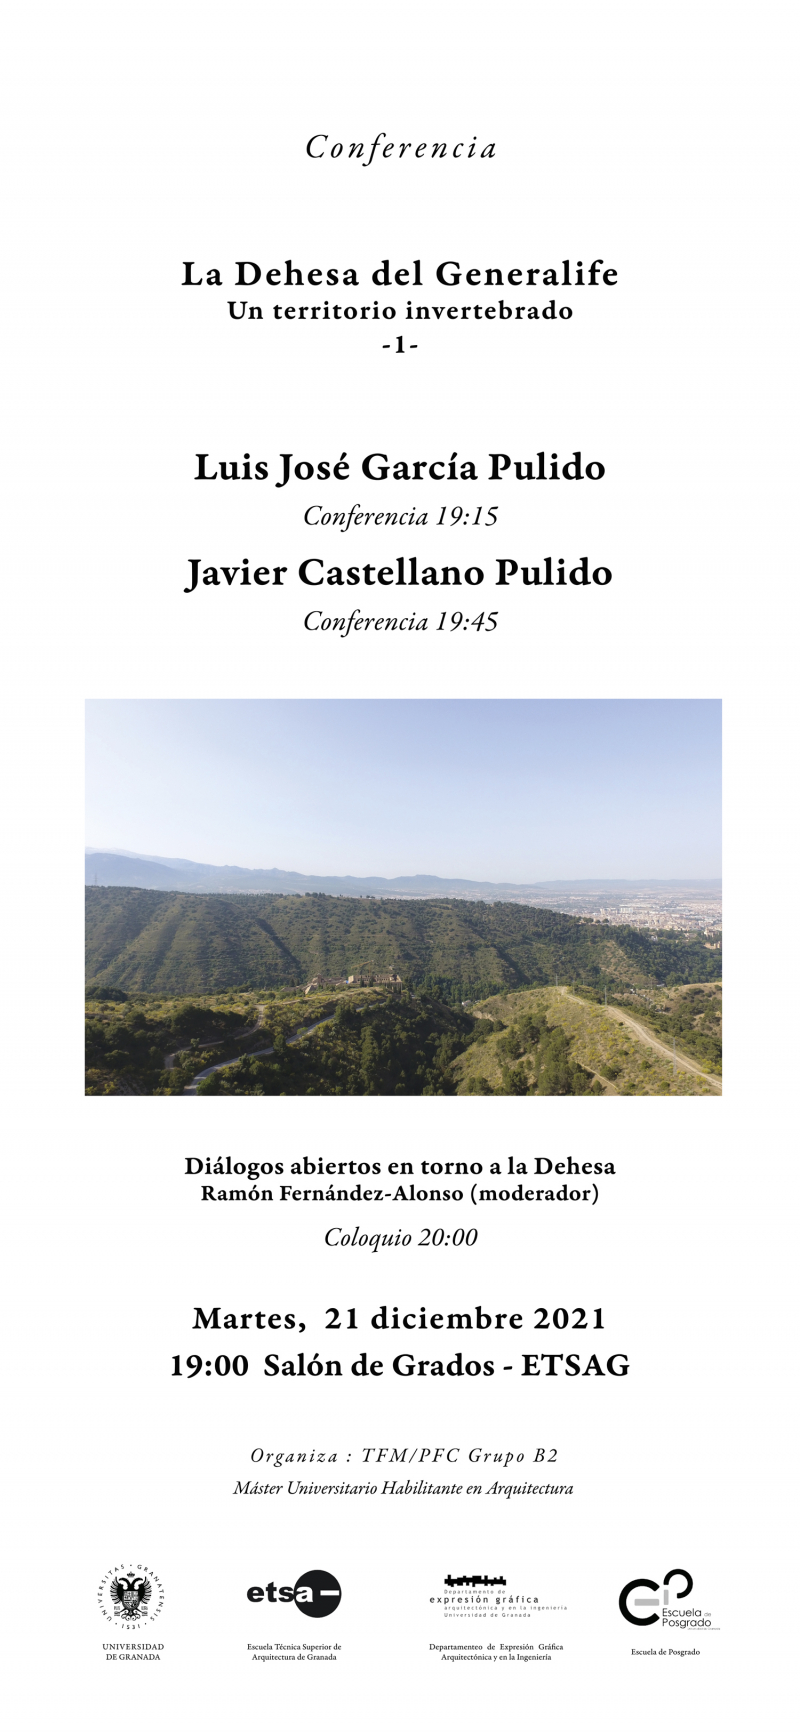 Cartel de las conferencias de Luis José García Pulido y Javier Castellano Pulido